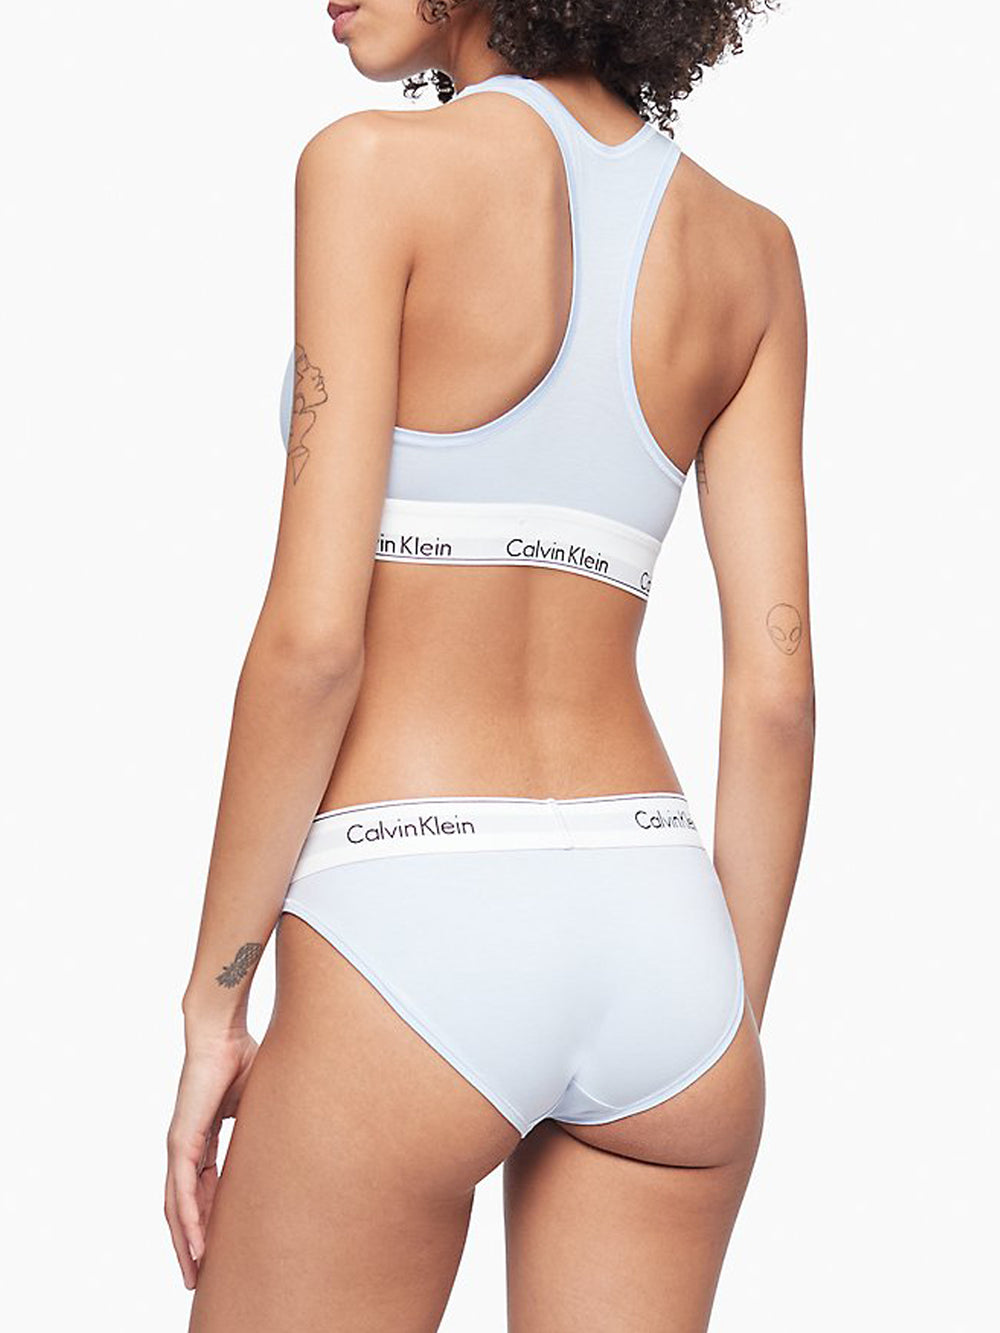 Calvin Klein Underwear Women's Monolith Cotton Unlined Bralette